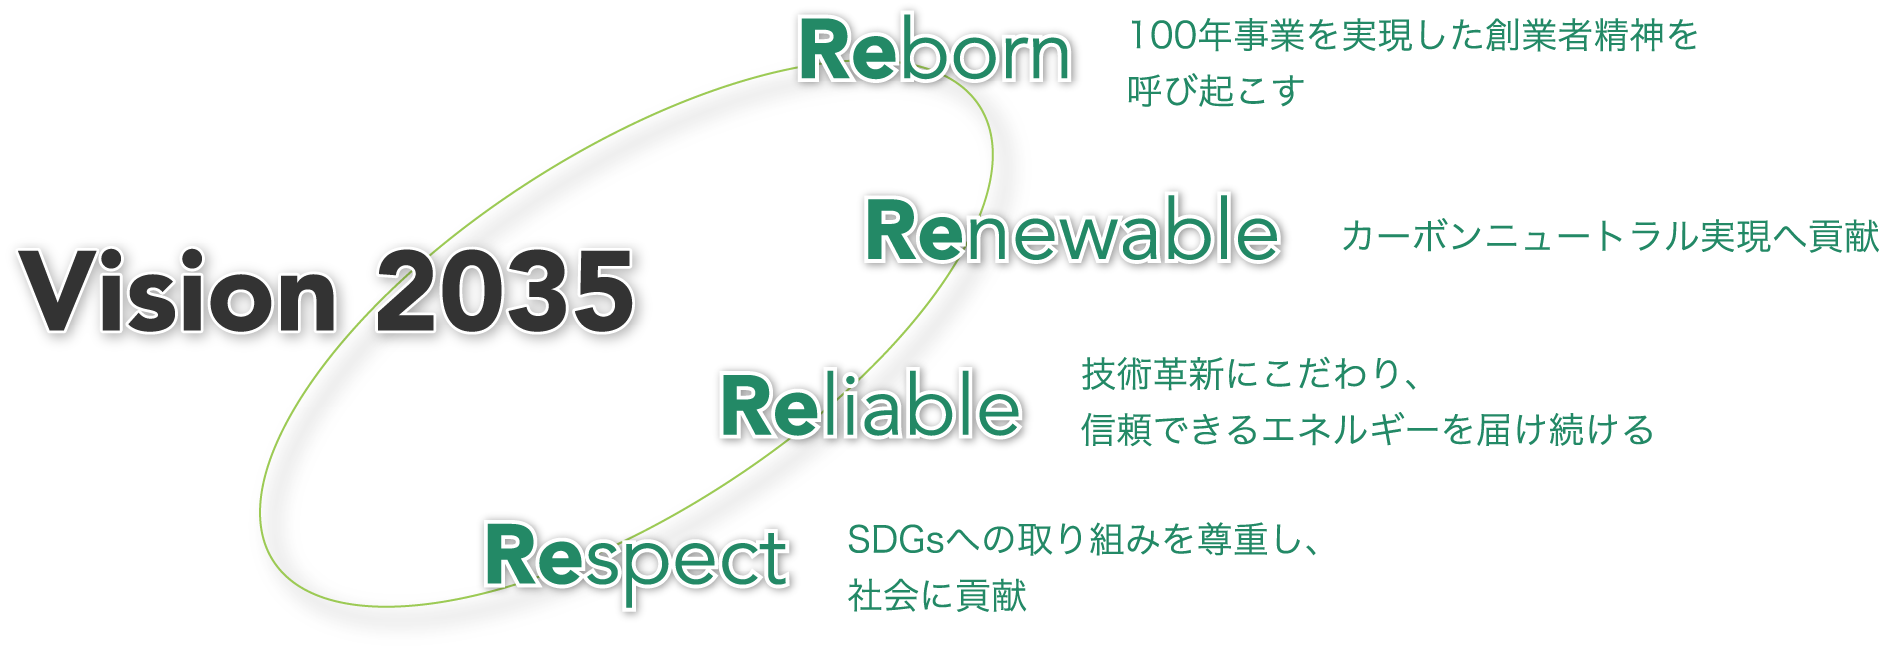 Vision 2035 Reborn「100年事業を実現した創業者精神を呼び起こす」 Renewable「カーボンニュートラル実現へ後継」 Reliable「技術革新にこだわり、信頼できるエネルギーを届け続ける」 Respect「SDGsへの取り組みを尊重し、社会に貢献」